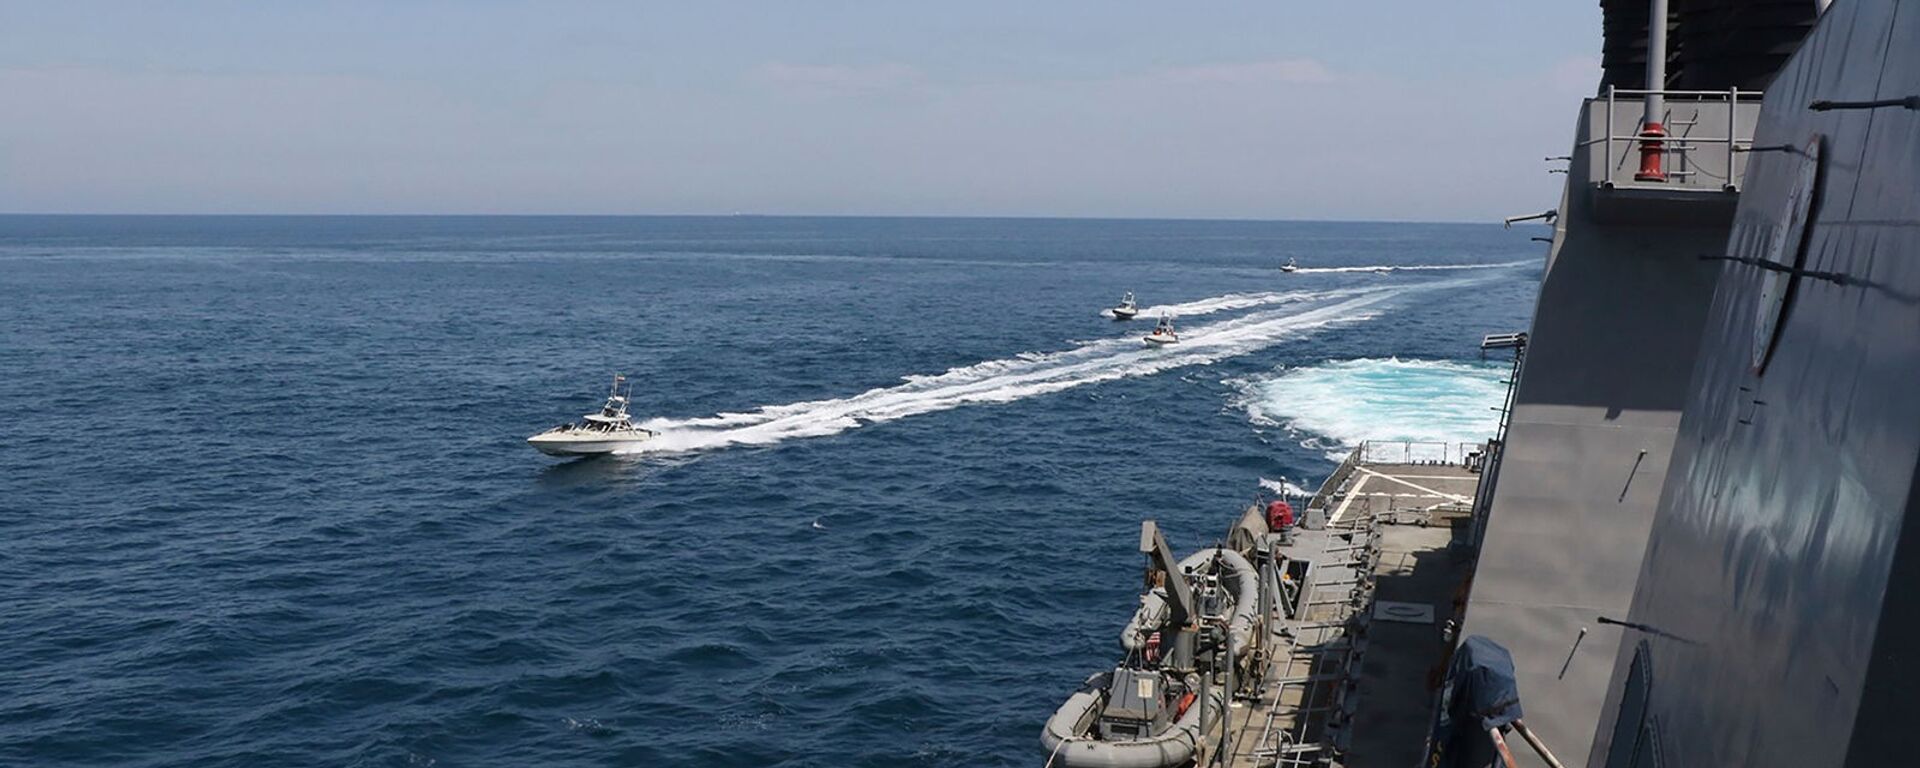 Иранские корабли Революционной гвардии плывут рядом с американскими военными кораблями в Персидском заливе близ Кувейта (15 апреля 2020). Персидский залив - Sputnik Արմենիա, 1920, 14.02.2021